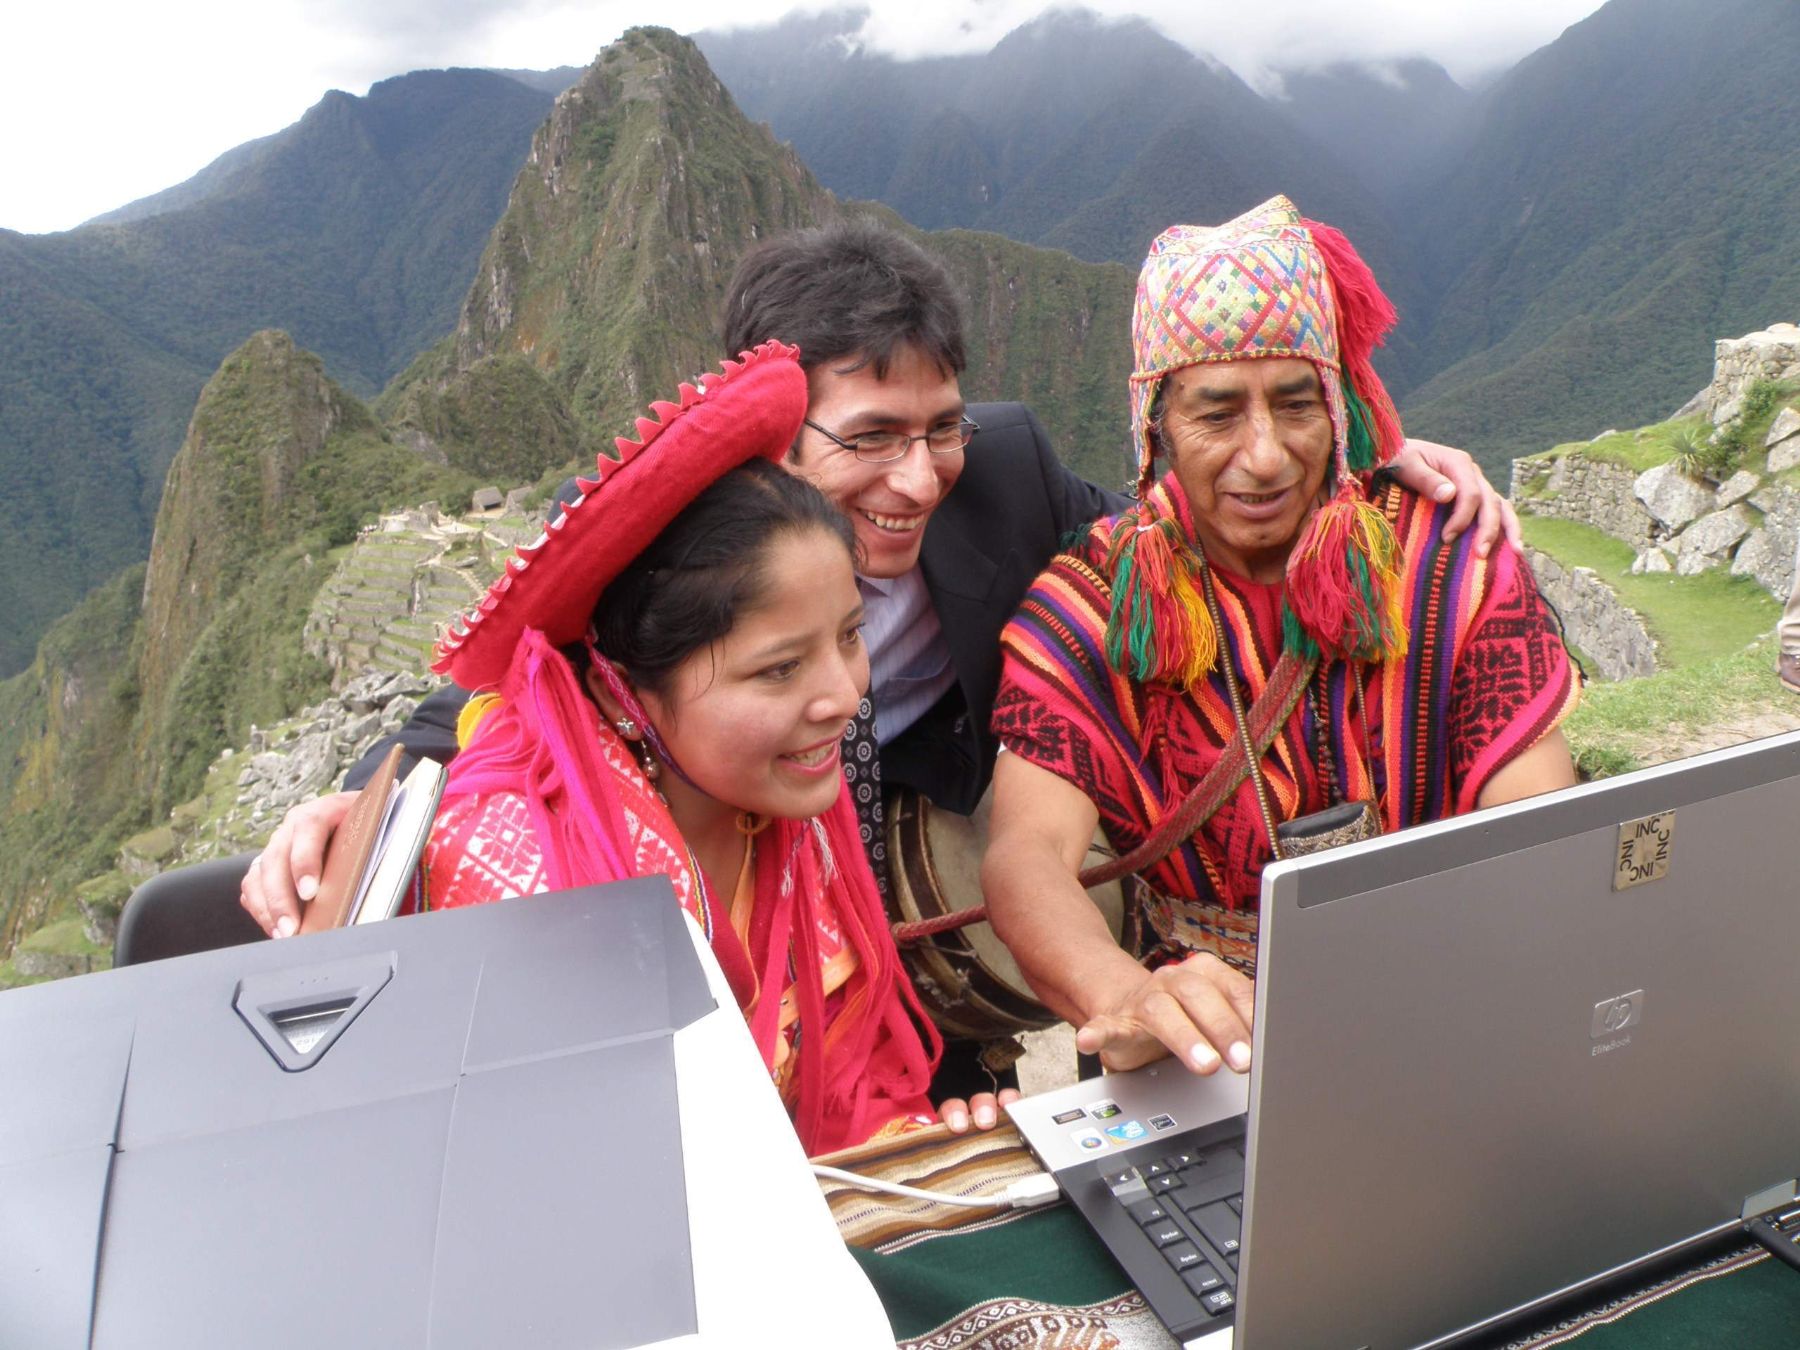 Implementan boleto electrónico para adquirir entradas al santuario arqueológico de Machu Picchu. Foto: ANDINA / Percy Hurtado.